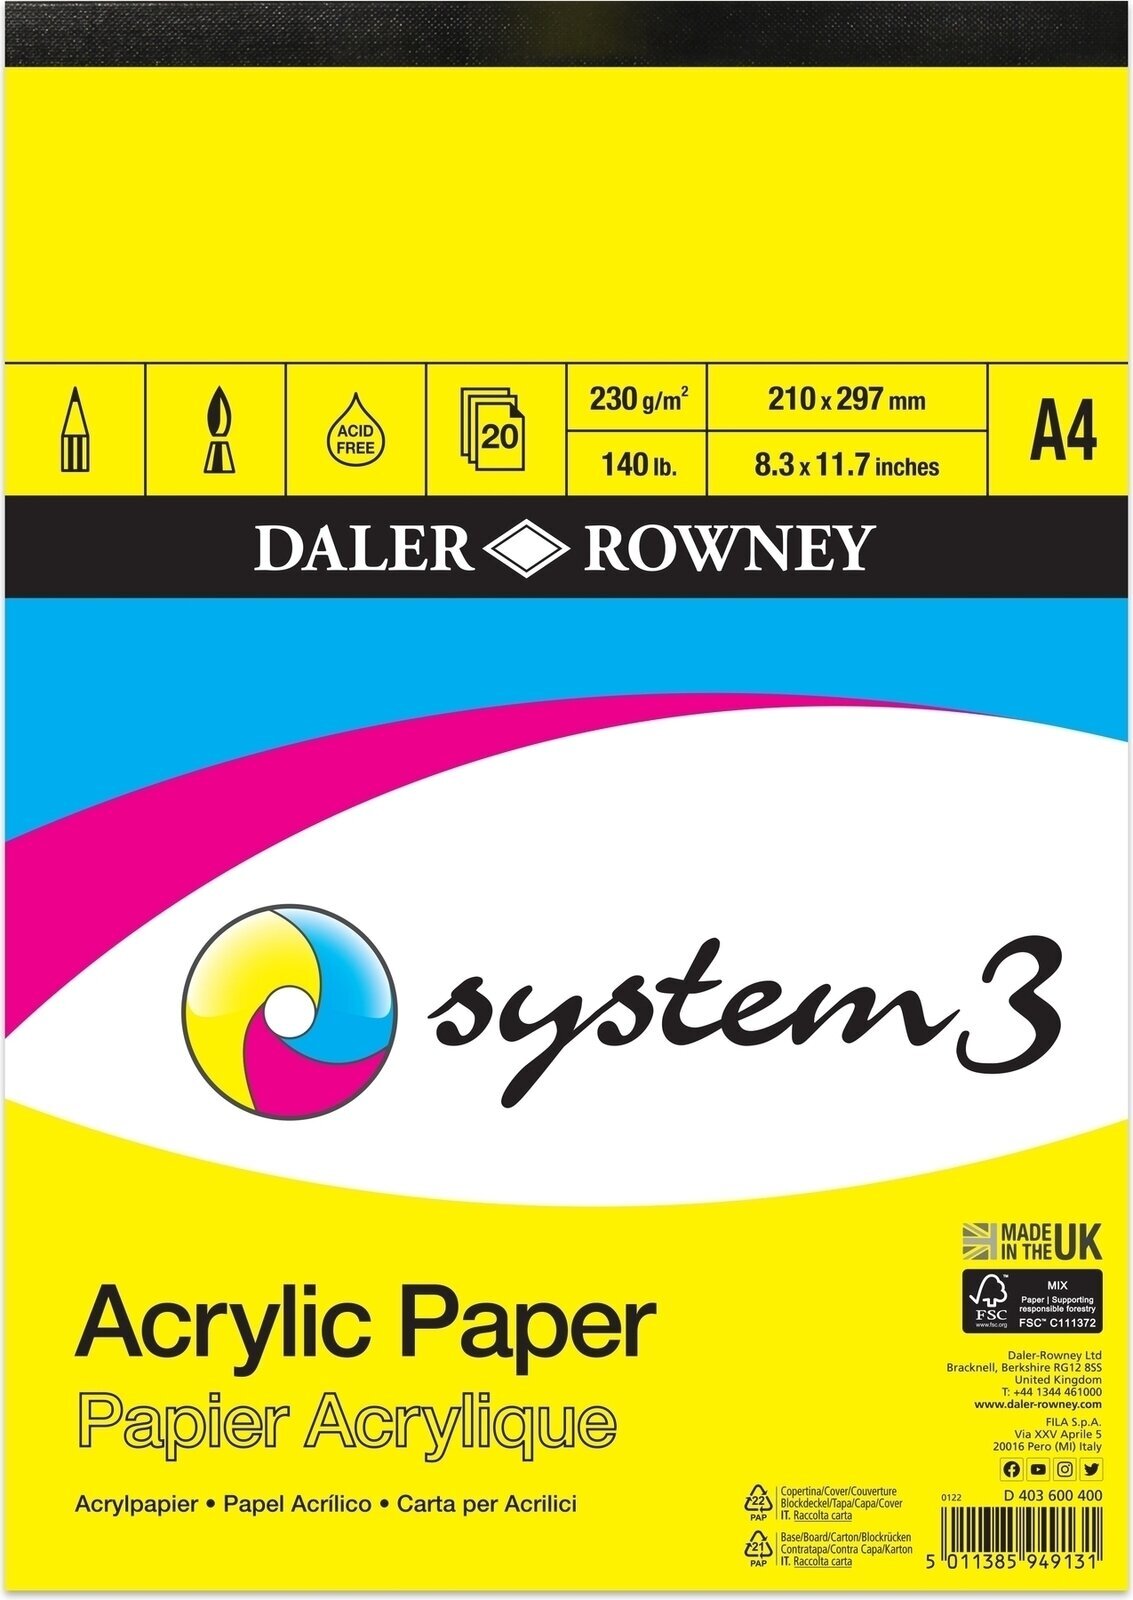 Vázlattömb Daler Rowney System3 Acrylic Paper System3 A4 230 g Vázlattömb